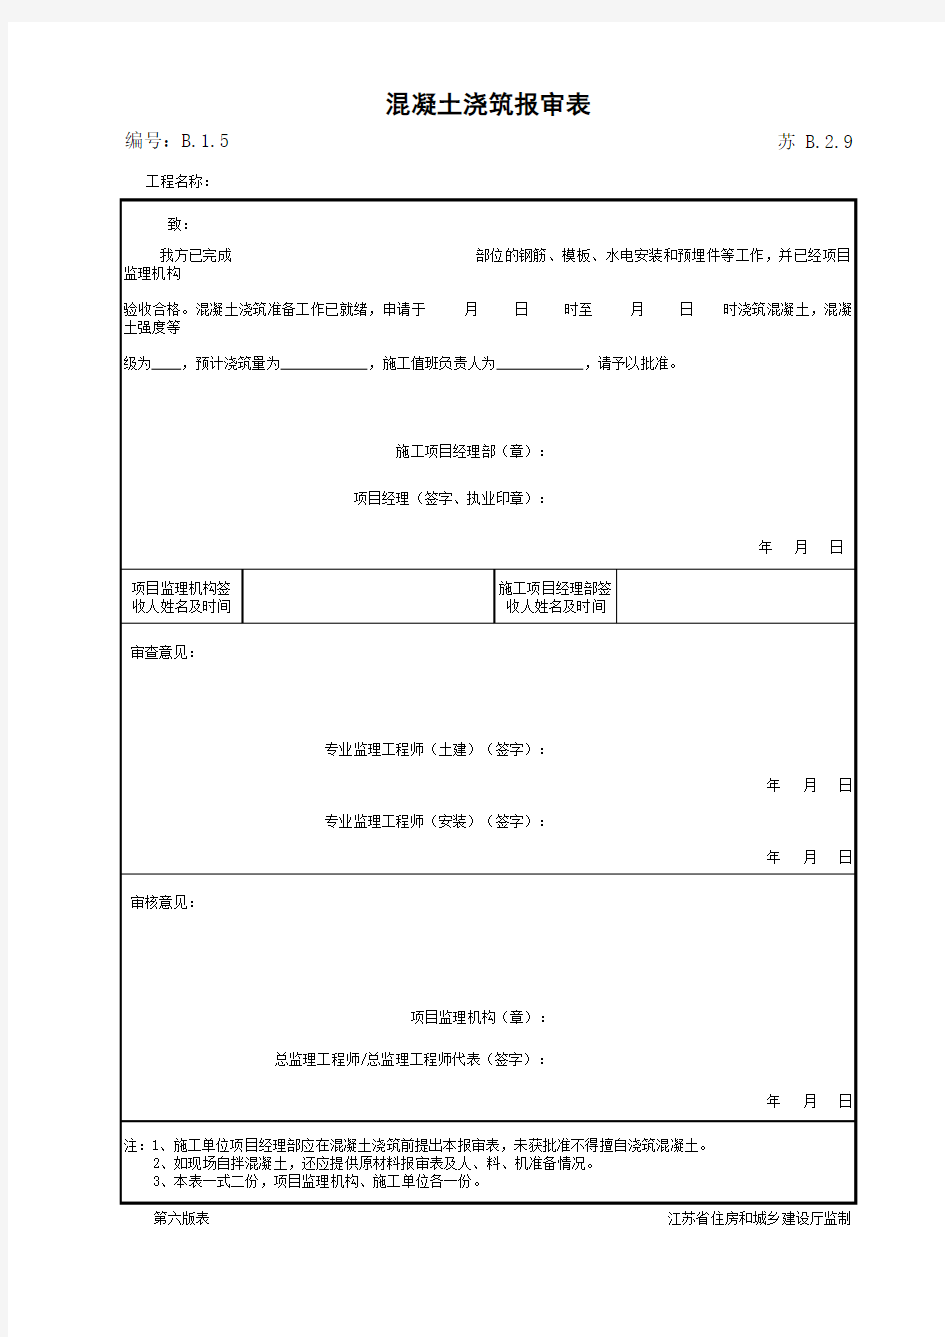 江苏省建设工程质监0190910六版表格文件B2.9